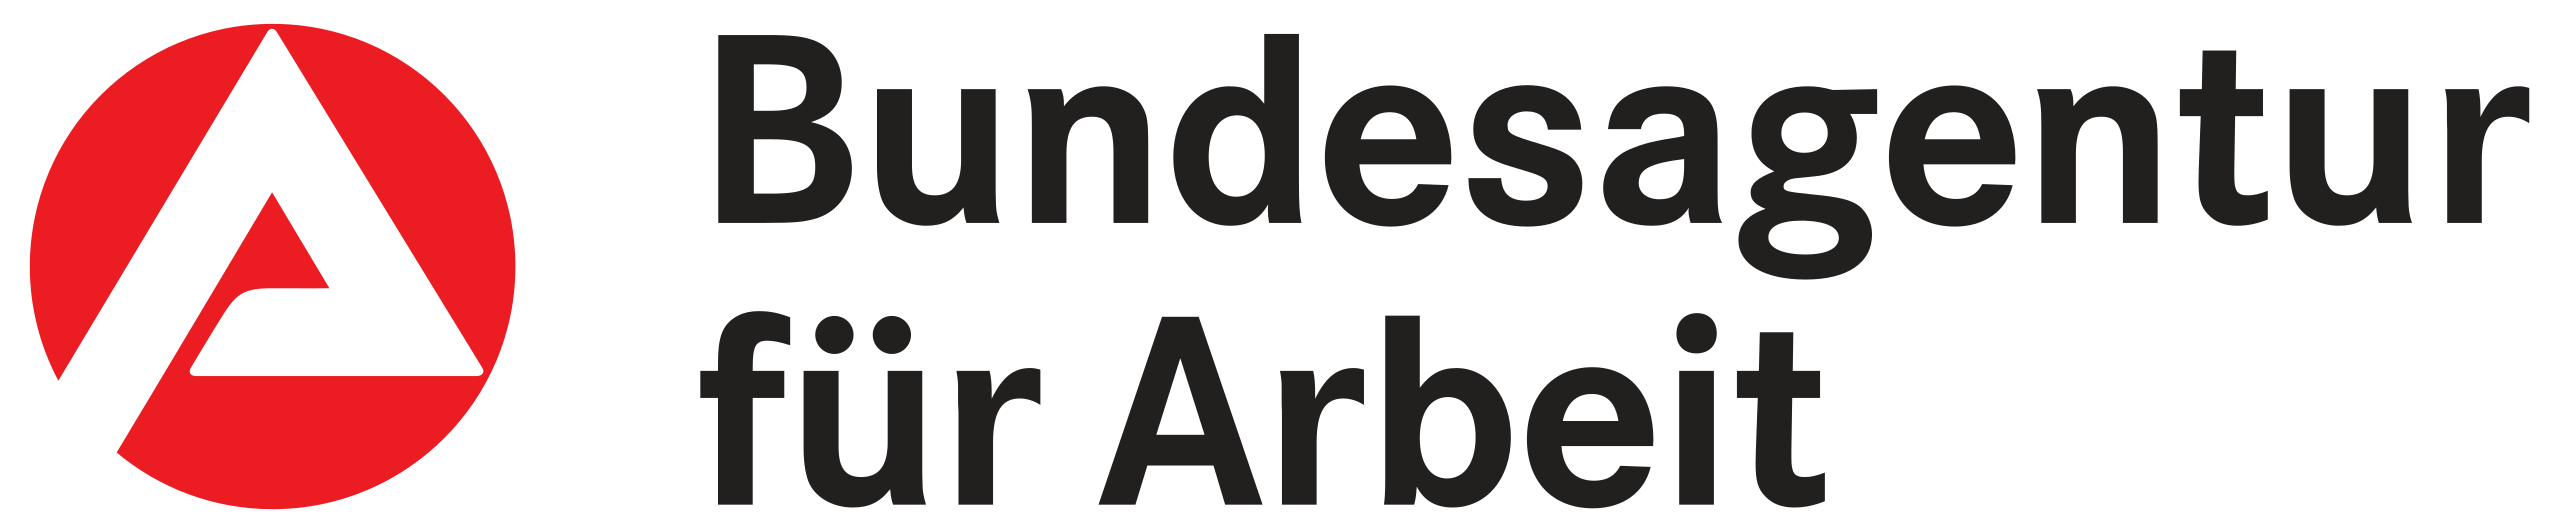 Bundesagentur fuer Arbeit logo